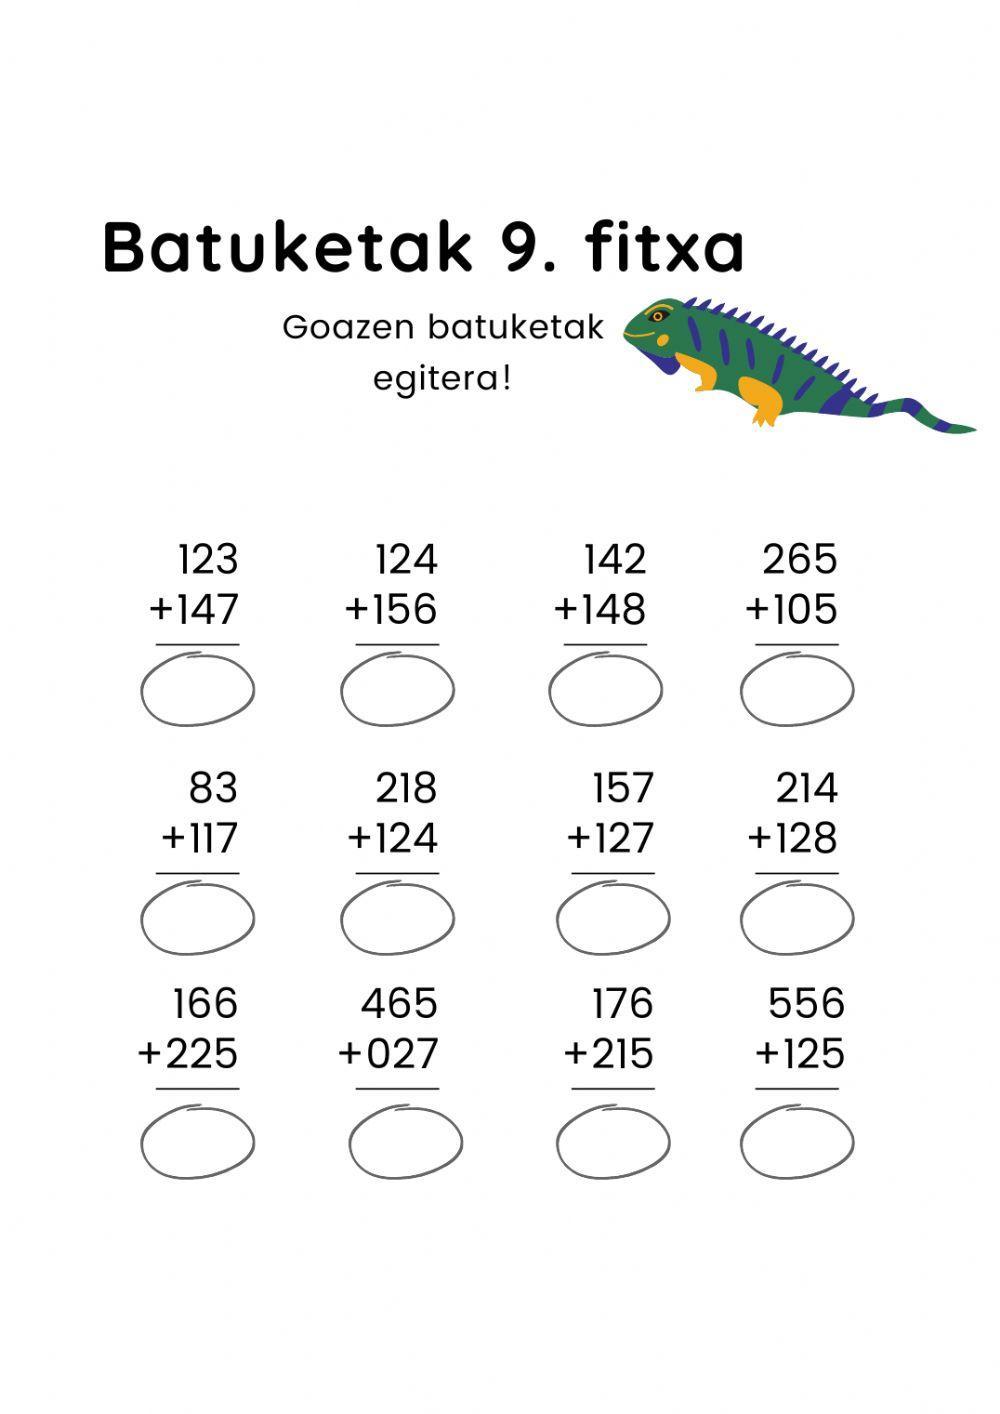 Batuketak 9.fitxa